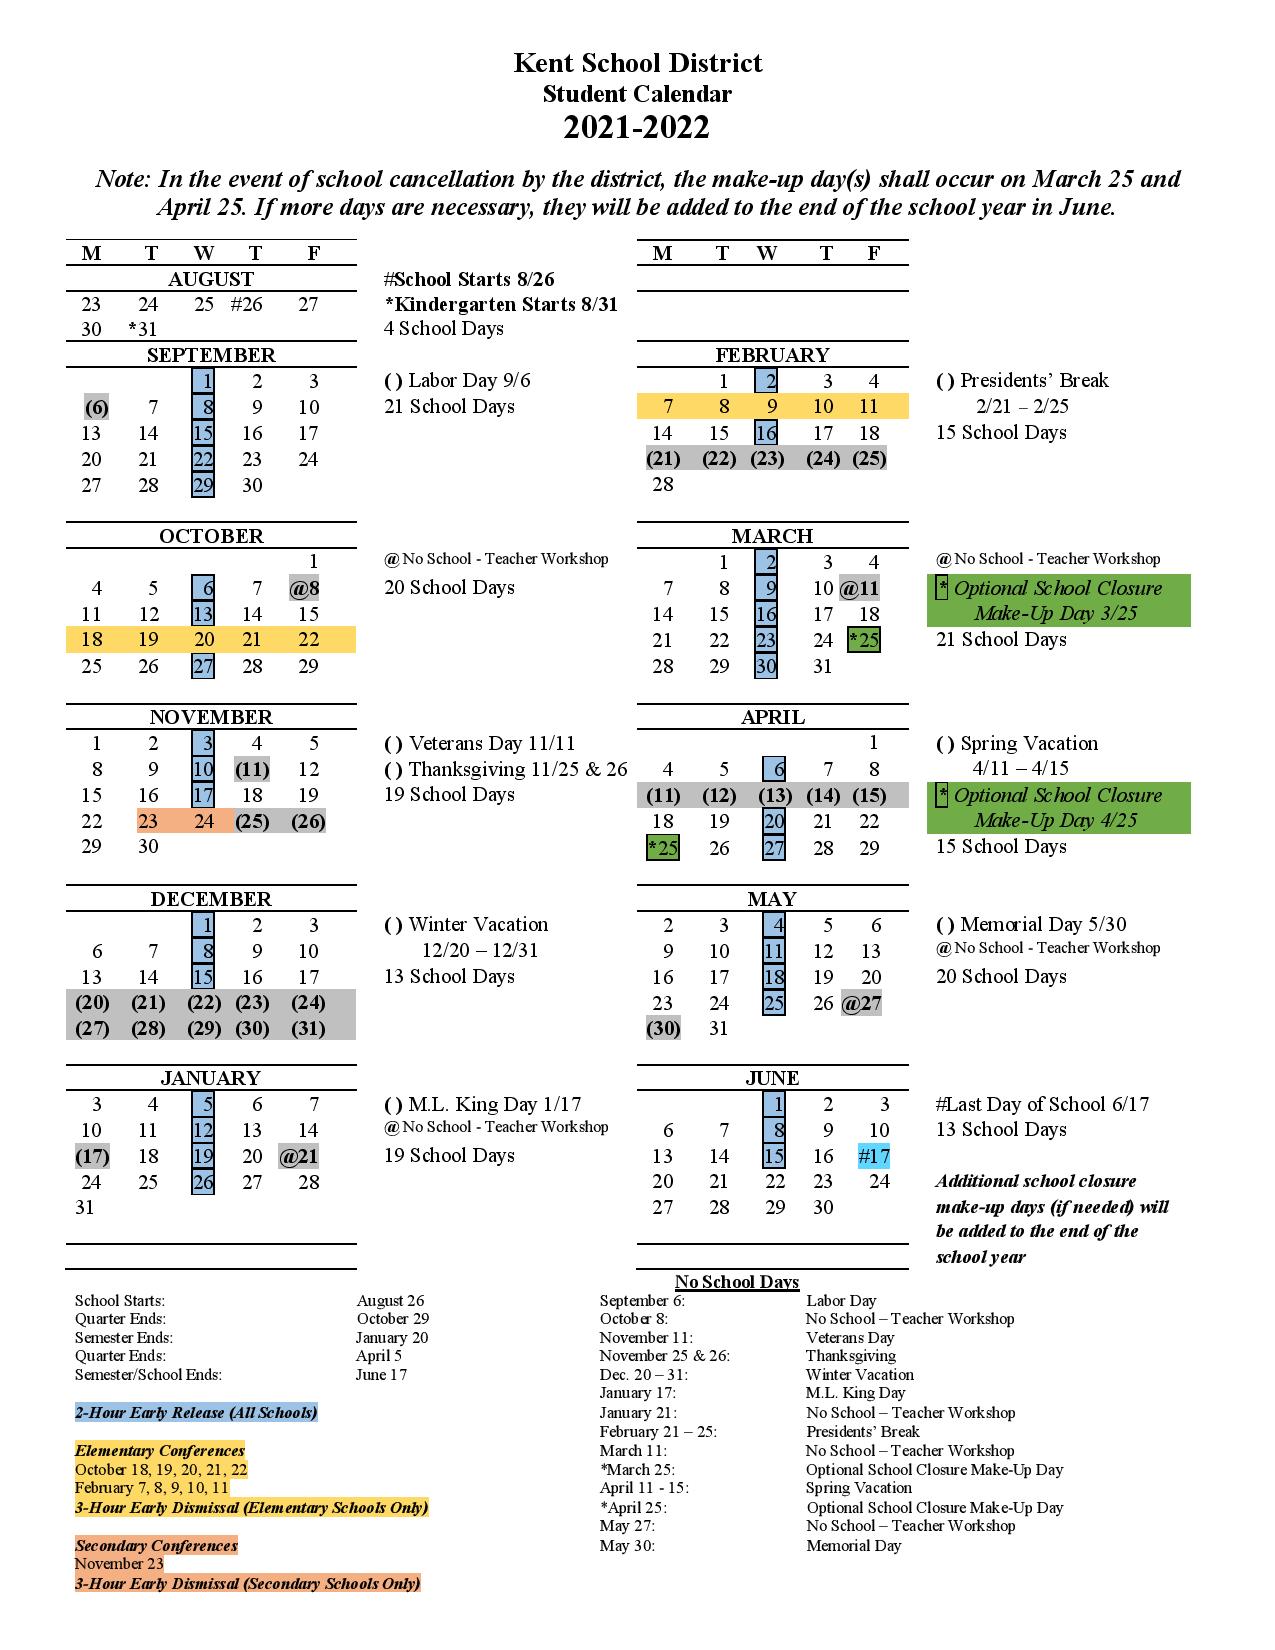 Kent School District Calendar 2022 in PDF Download Here